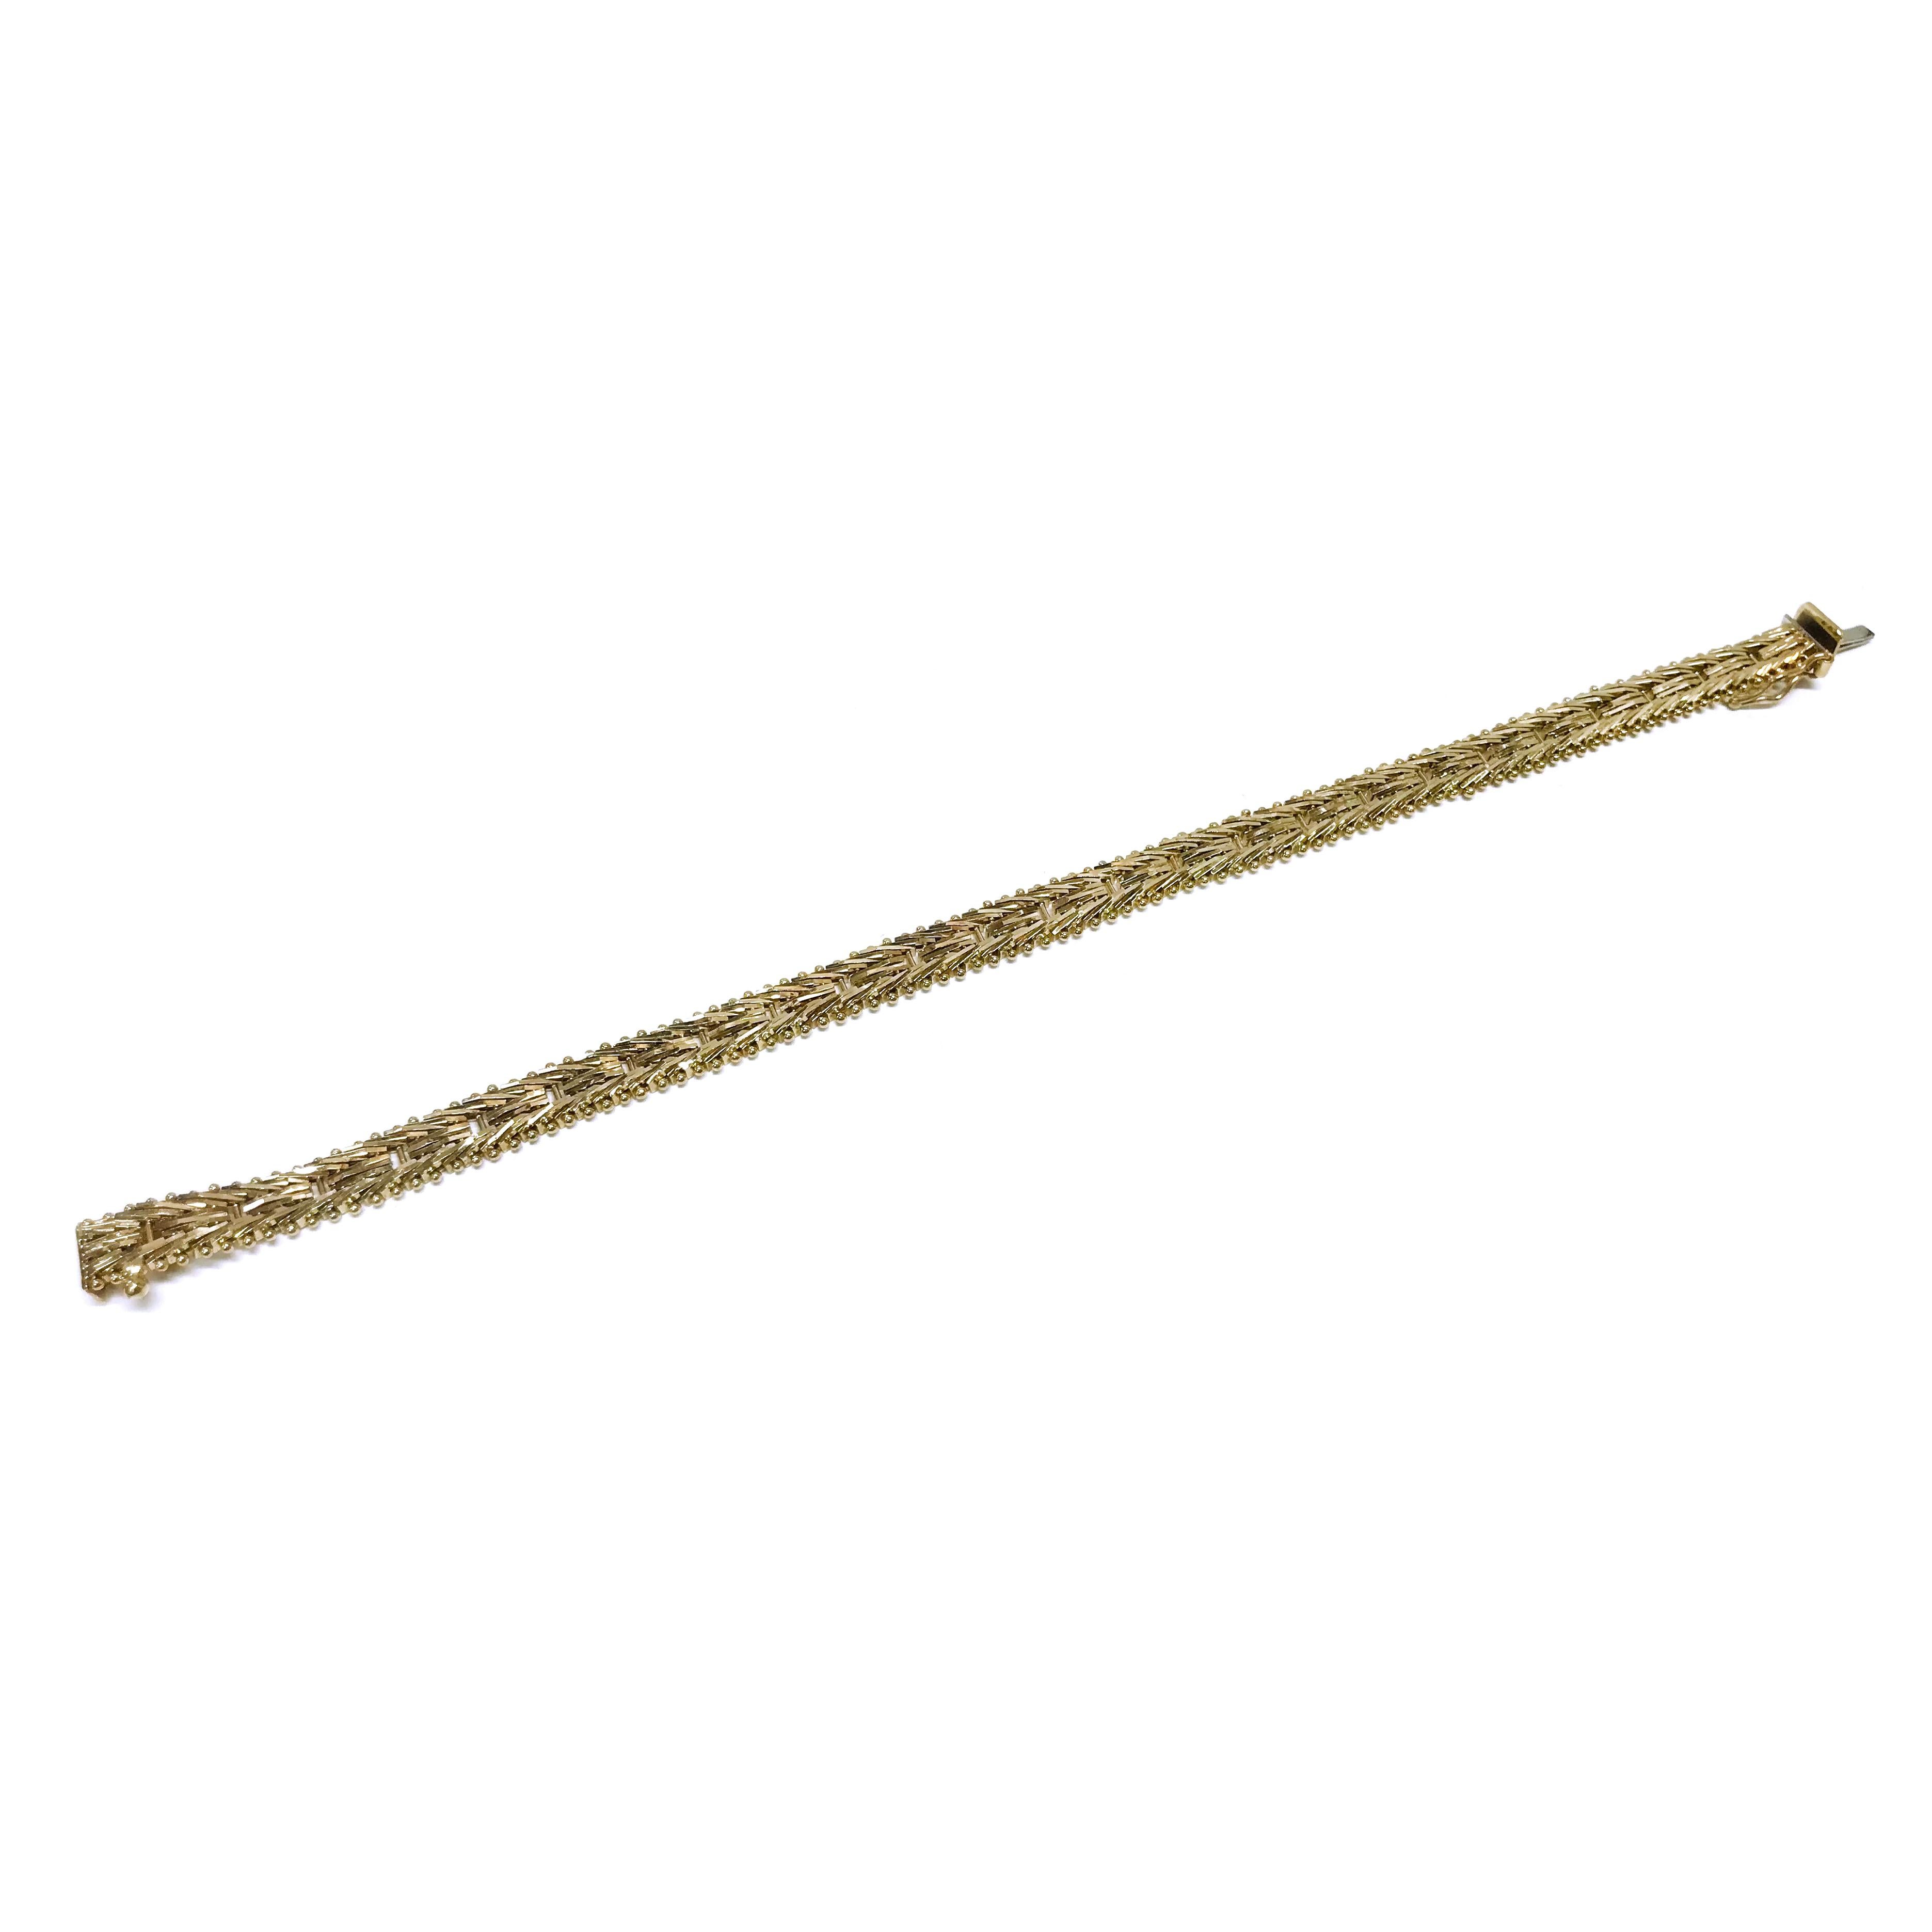 14 Karat Diamantschliff-Fuchsschwanz-Gliederarmband. Dieses Armband besteht aus 6 mm dicken, diamantgeschliffenen Fuchsschwanzgliedern aus Gelbgold. Das Armband ist 7 1/4